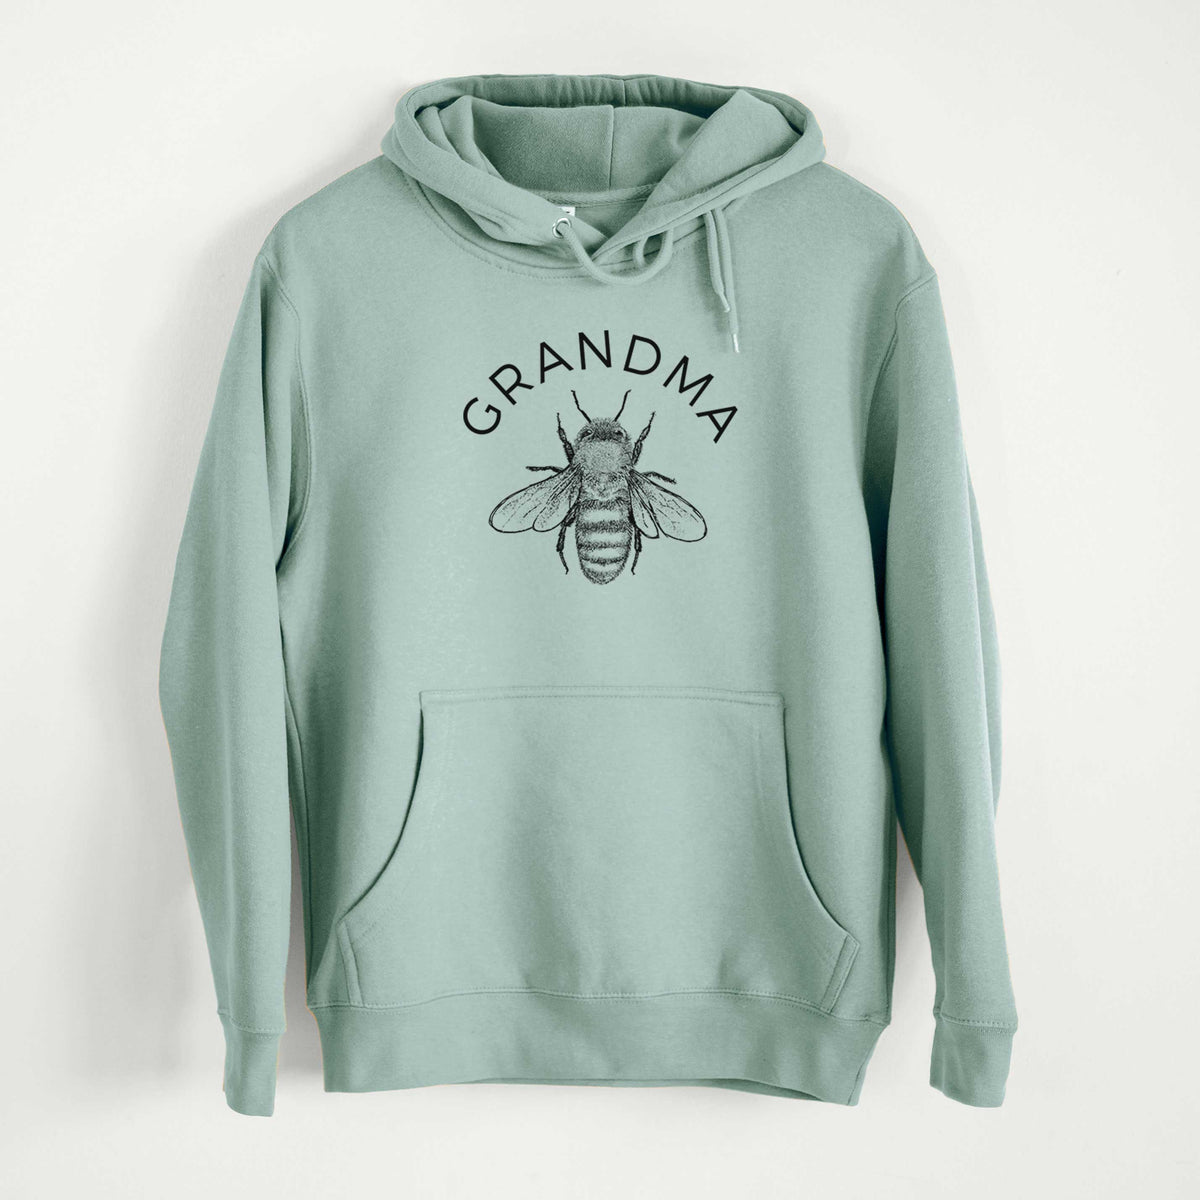 Grandma Bee  - Mid-Weight Unisex Premium Blend Hoodie